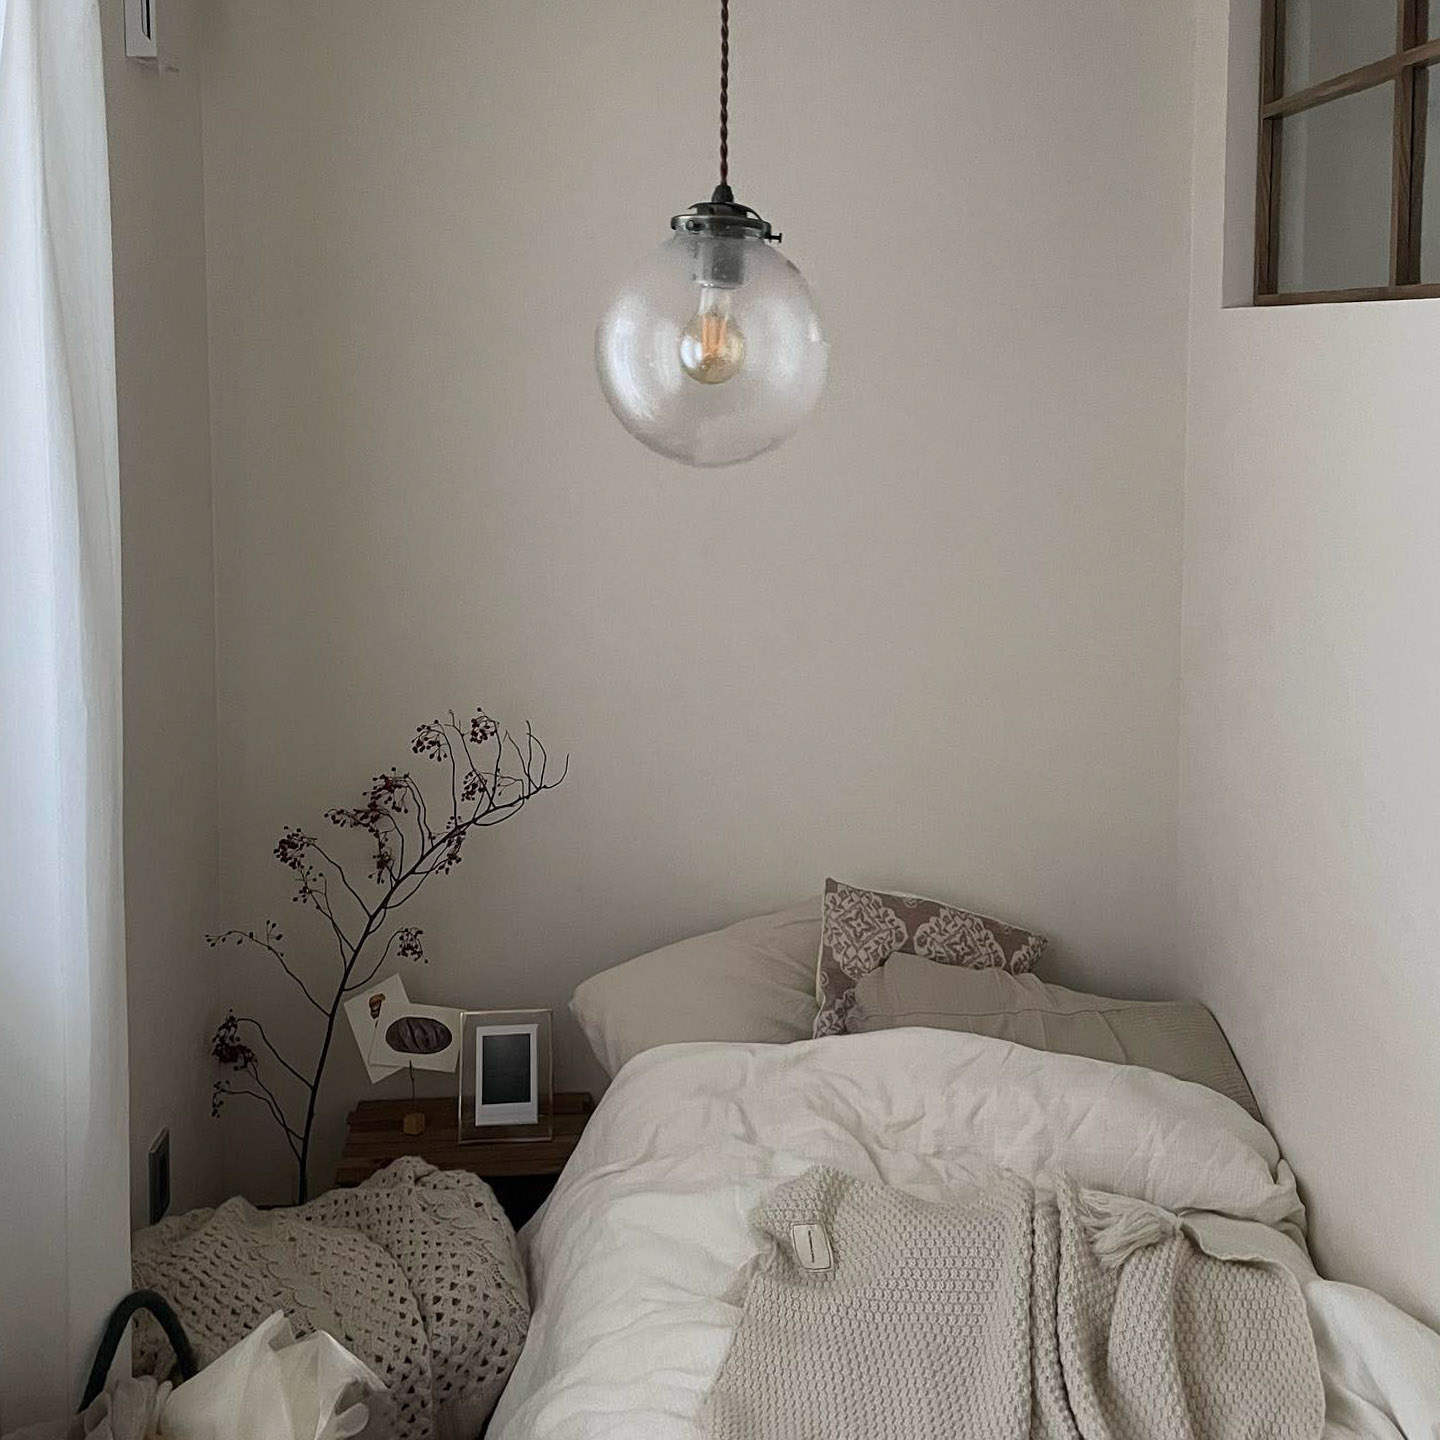 シングルベッドがちょうどおさまったという寝室は色を統一してシンプルな空間に。照明は気泡が入った感じが気に入ってリサイクルショップで購入したもの。「照明を変えるだけでも、部屋の雰囲気はかなり変わるので、おすすめです」